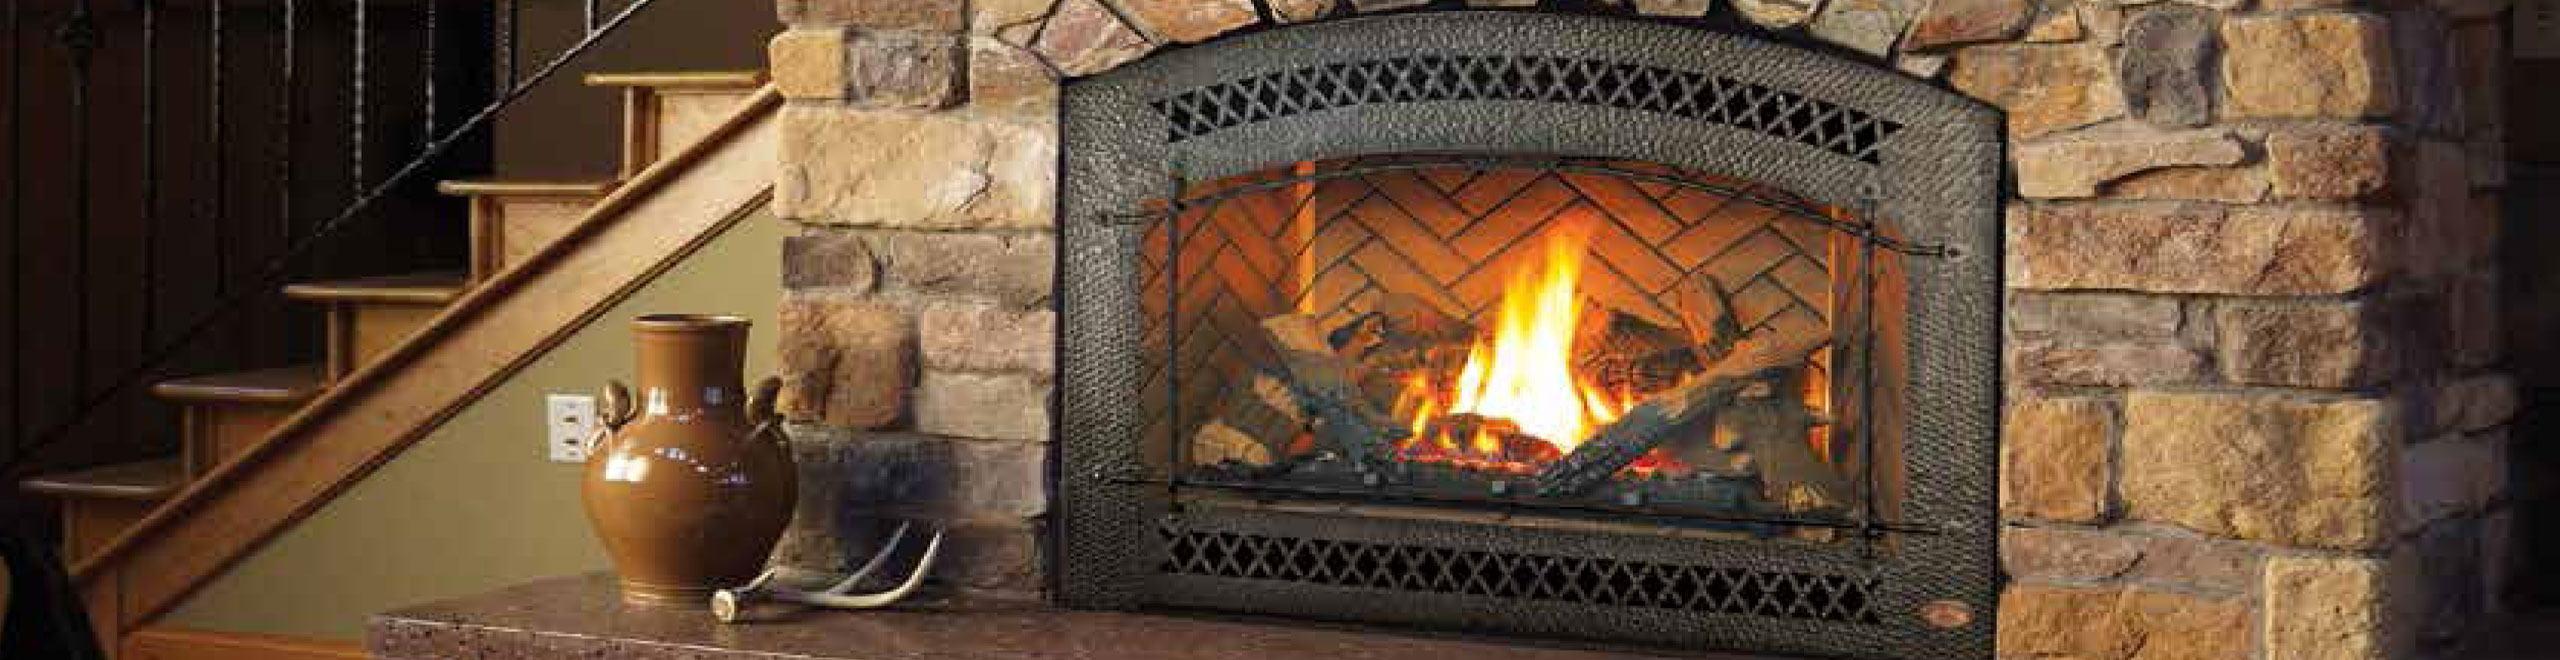 fireplace header2